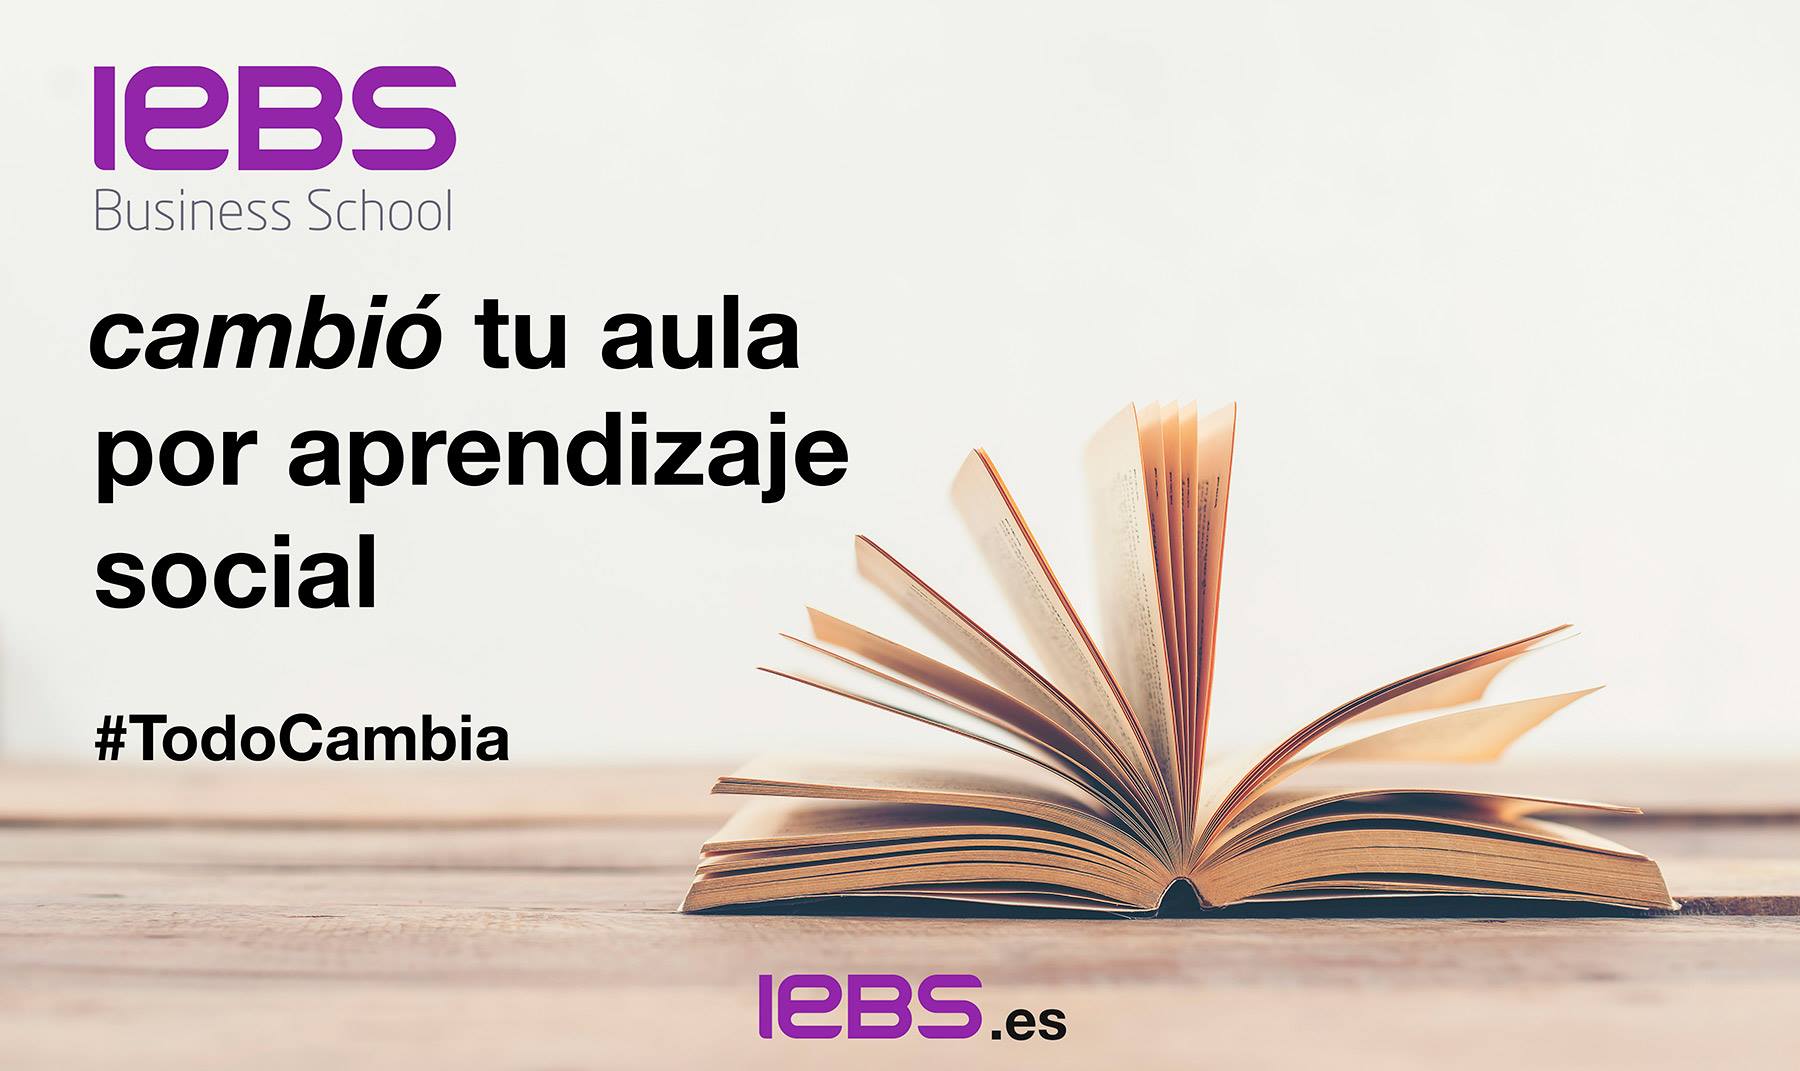 IEBS cierra el año con más de 1.800 alumnos y se convierte en la primera escuela en aceptar pagos con Bitcoins